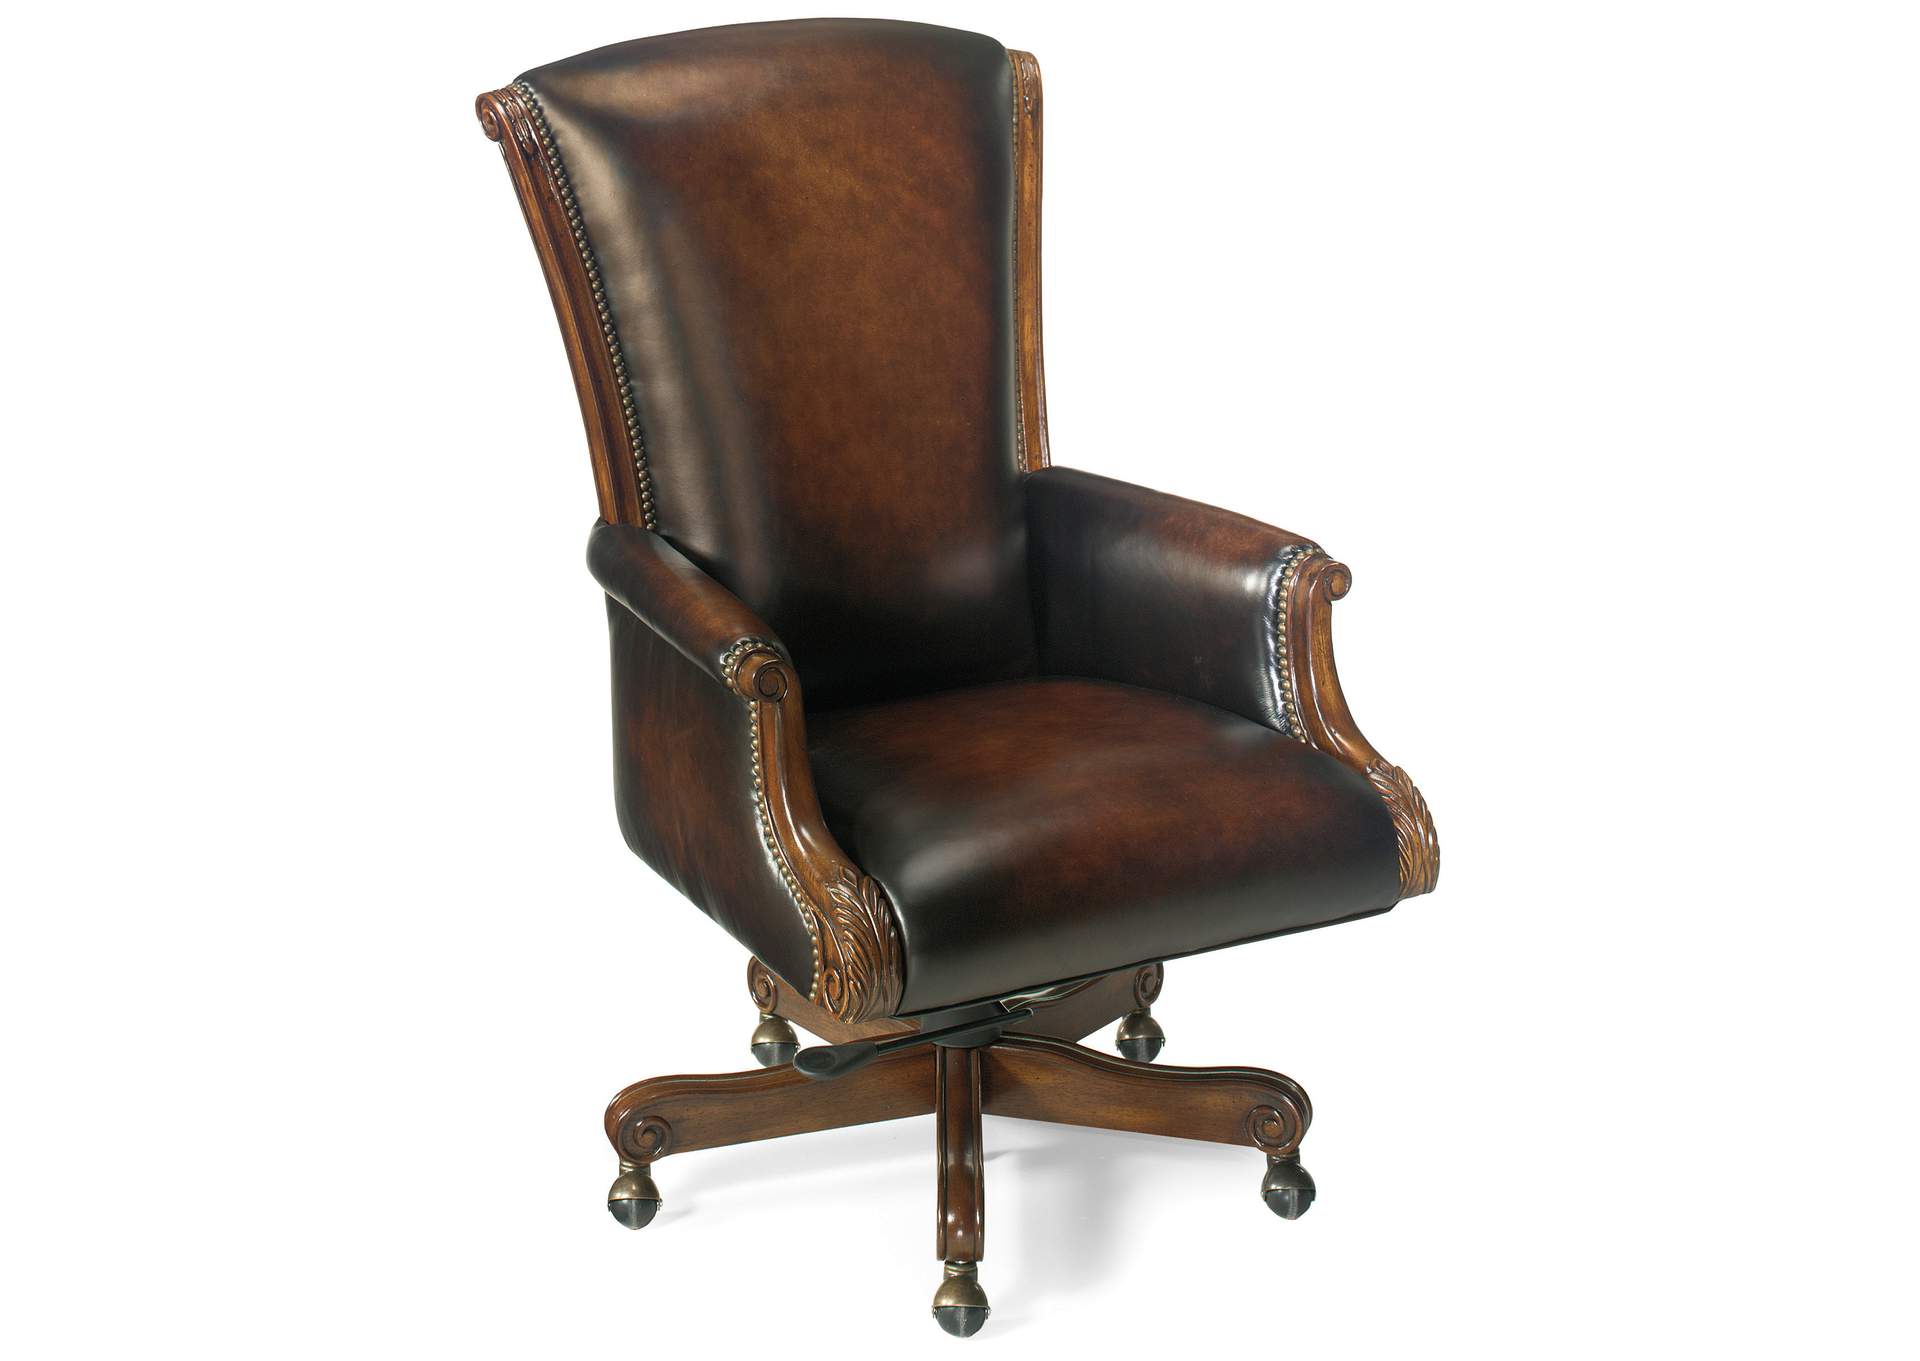 Samuel Executive Swivel Tilt Chair,Hooker Furniture